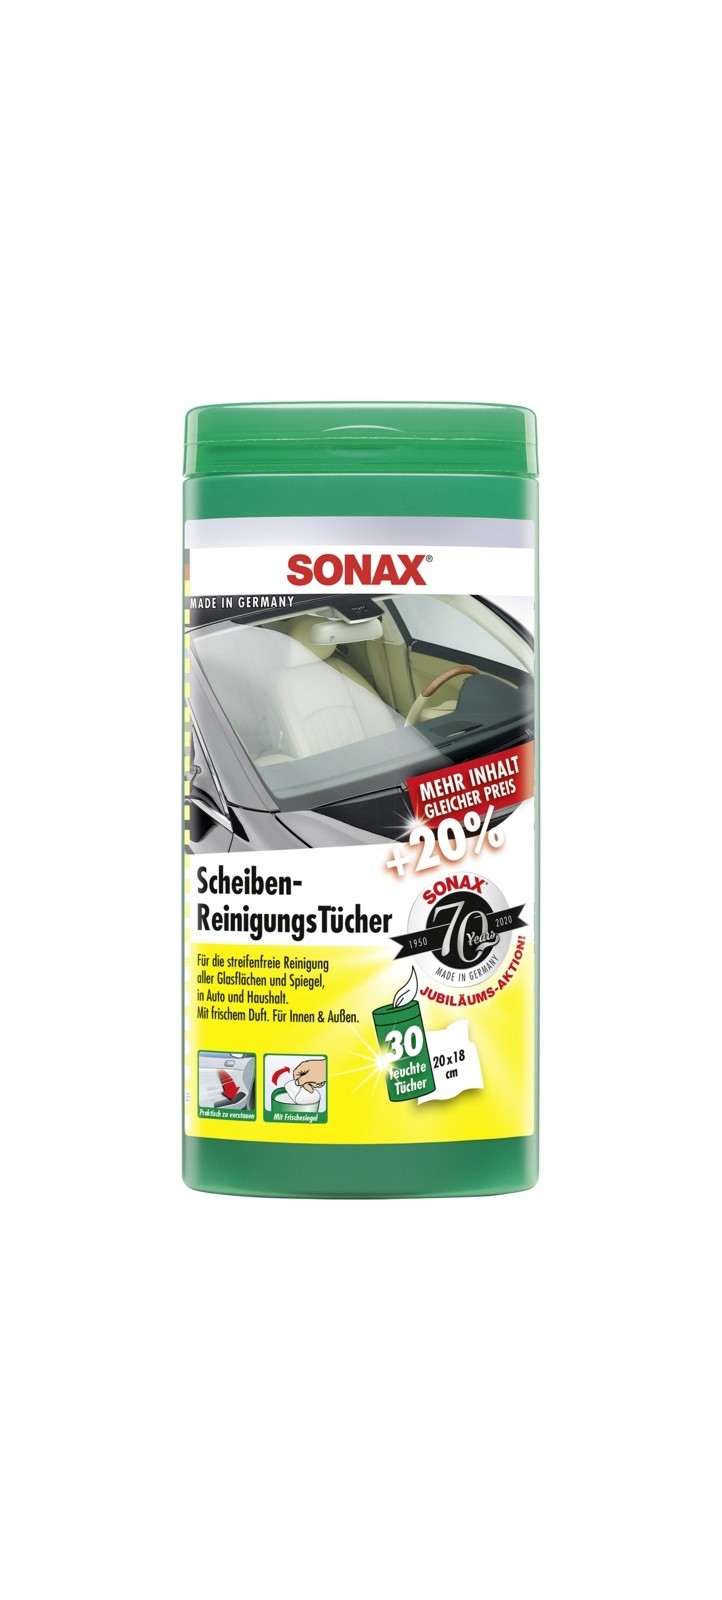 SONAX Scheiben-Reinigungstcher (25 Stk), Art.-Nr. 04120000